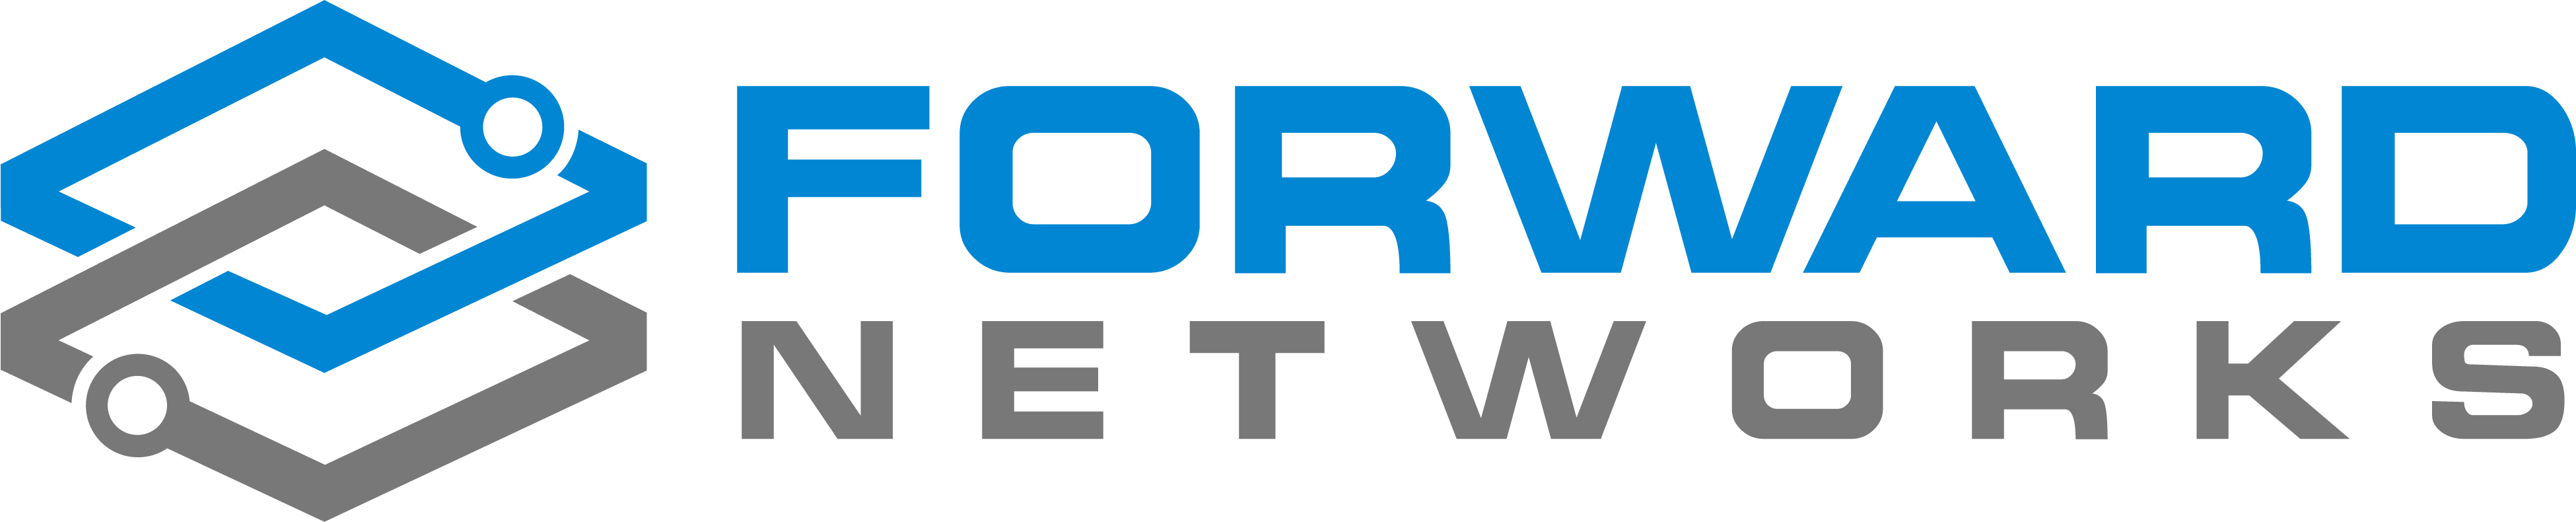 Forward Networks vendor logo